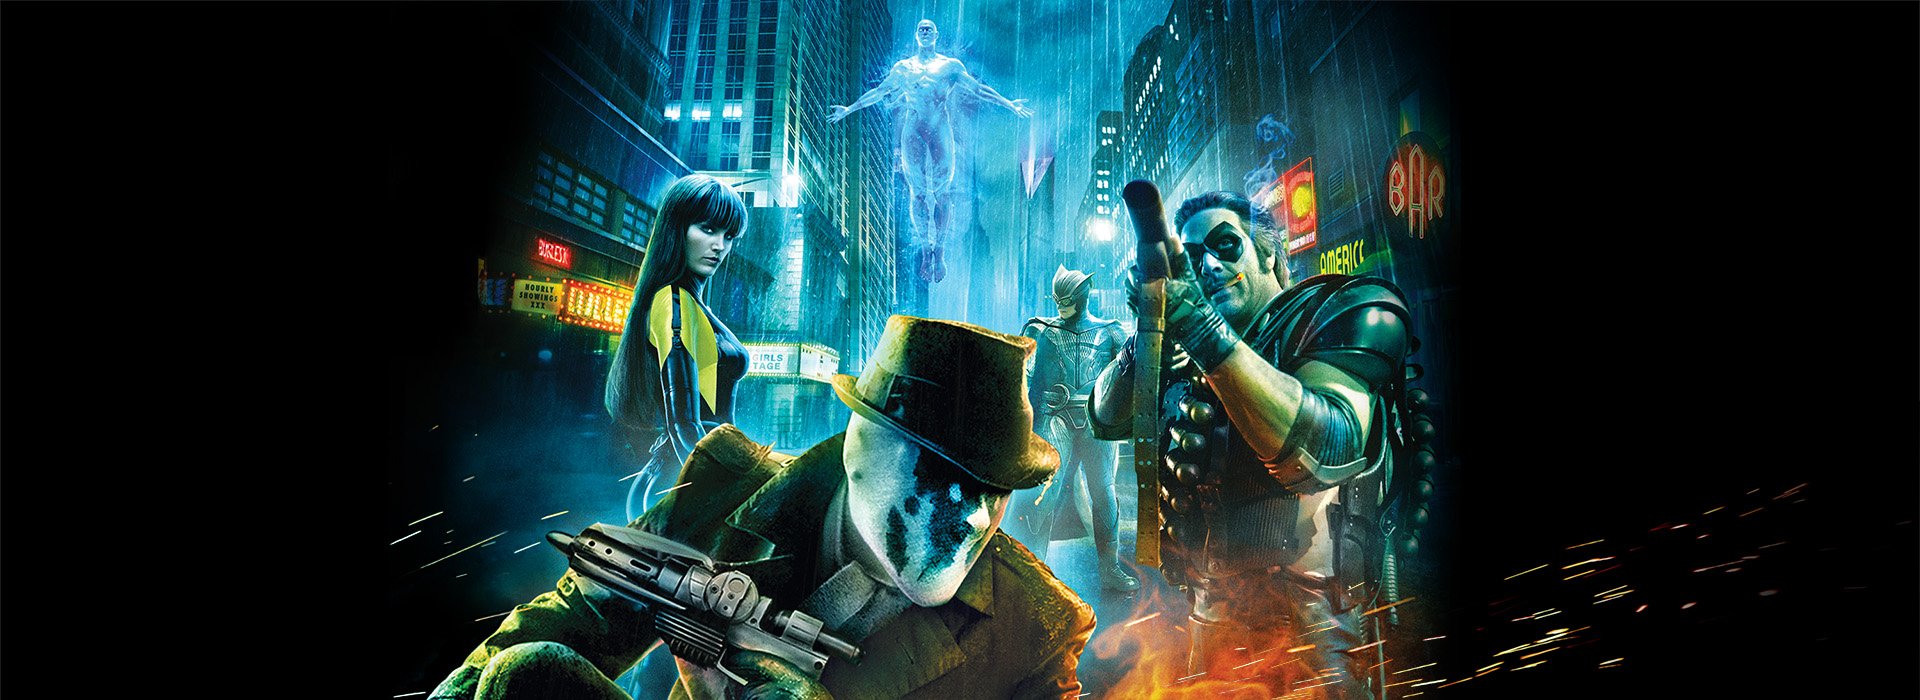 Movie poster Watchmen